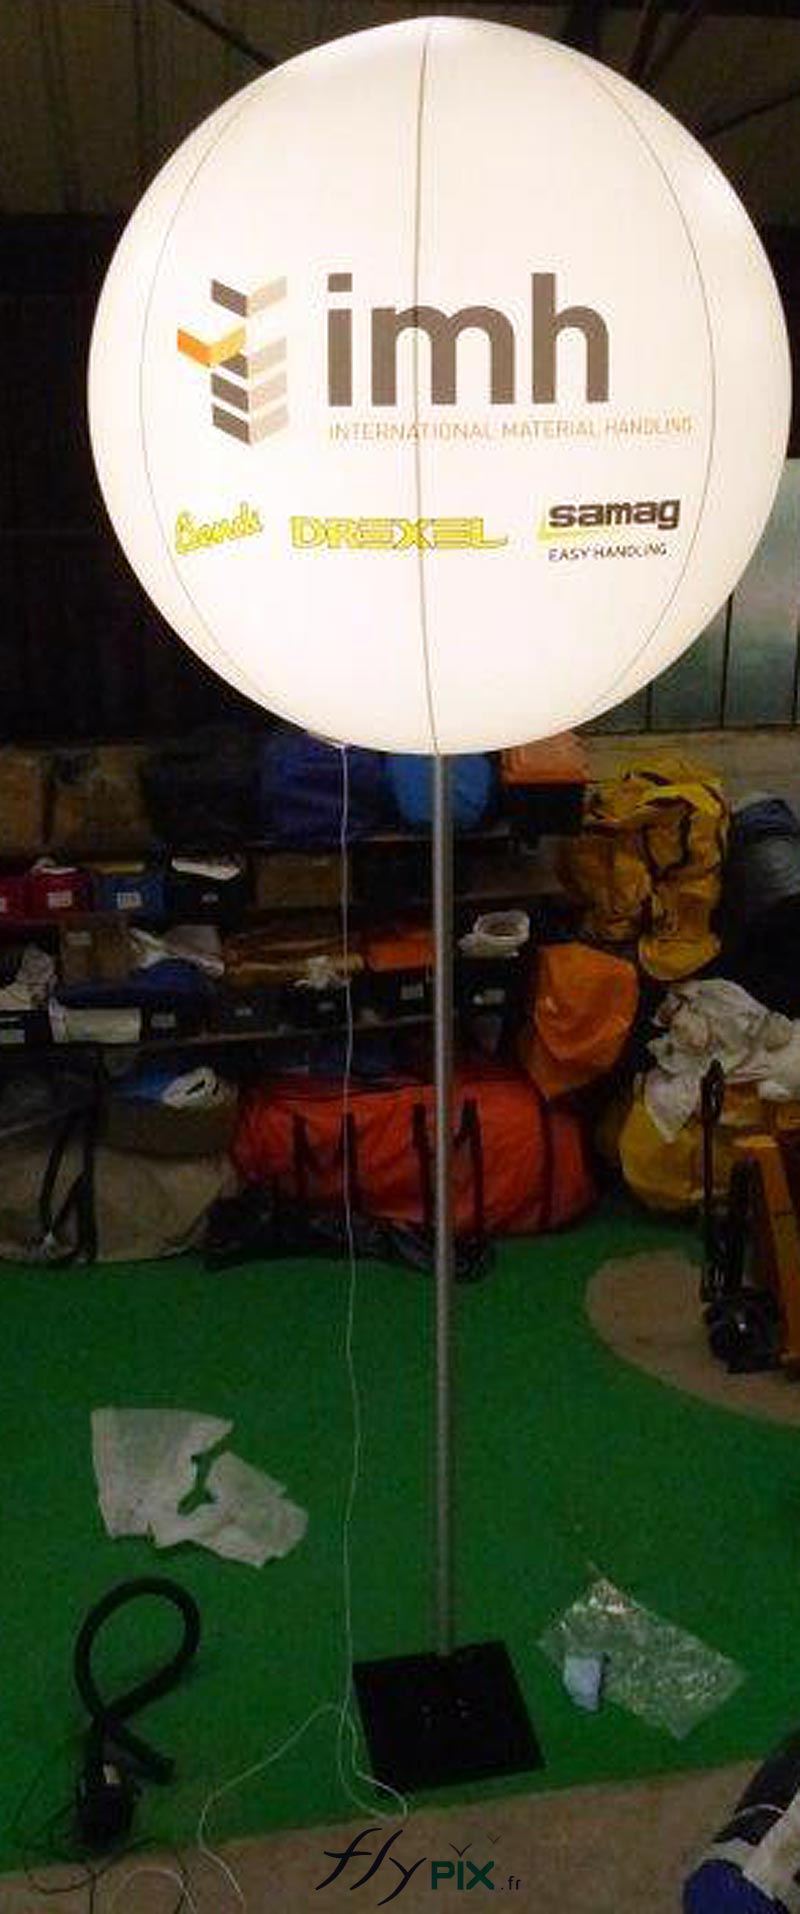 Ballon publicitaire lumineux fabriqué pour IMH Europe, pour un salon professionnel.